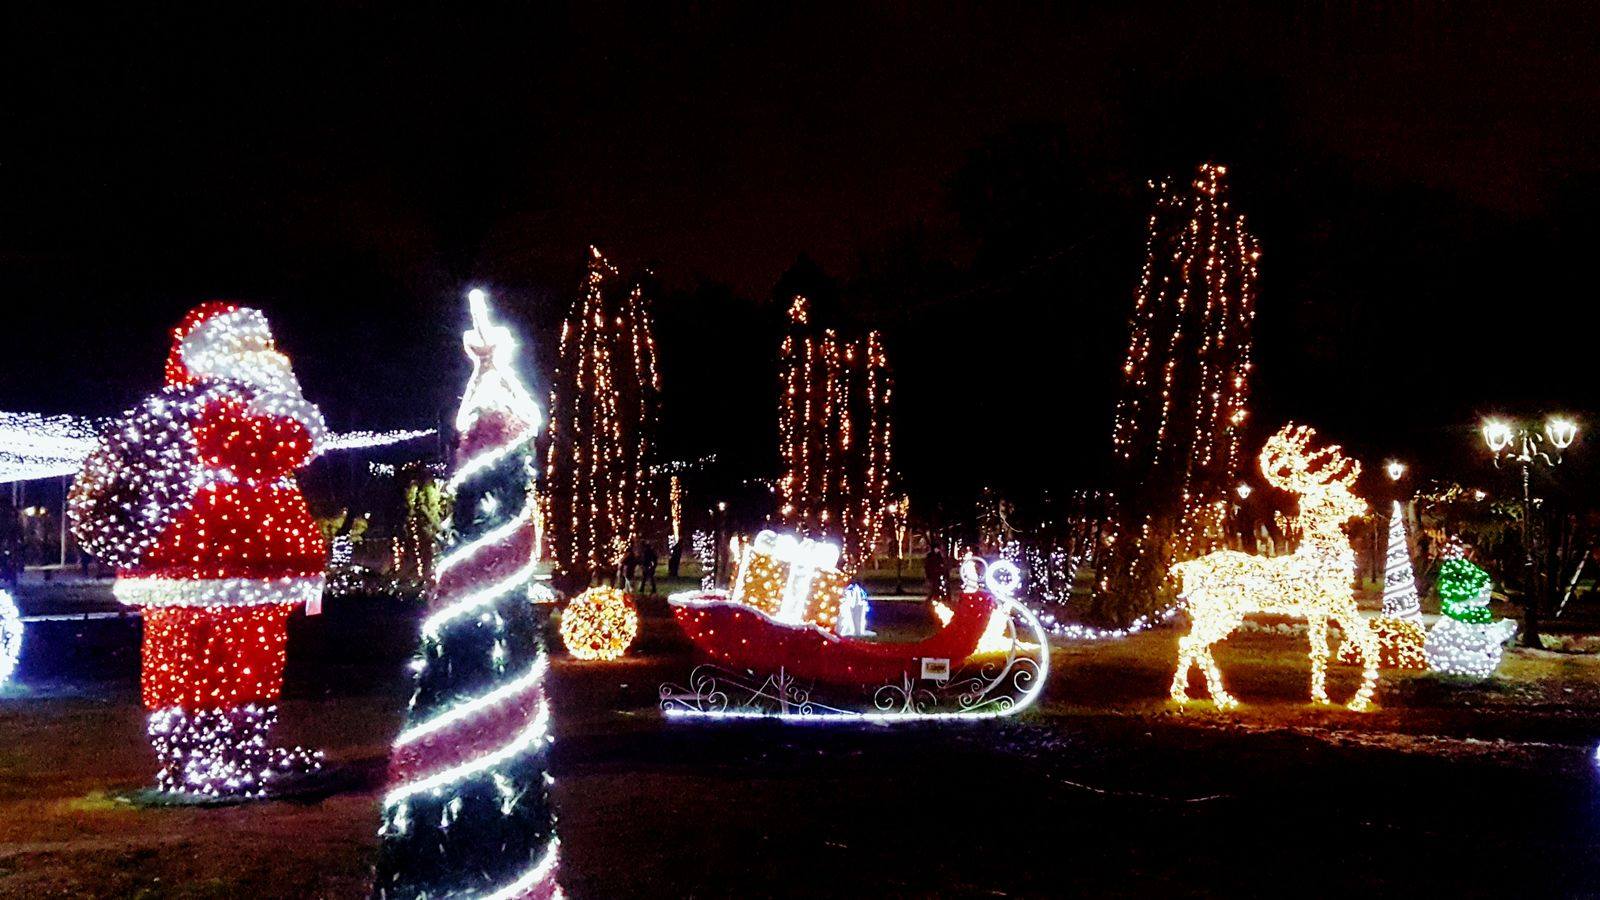 Christmas time / Sea of lights